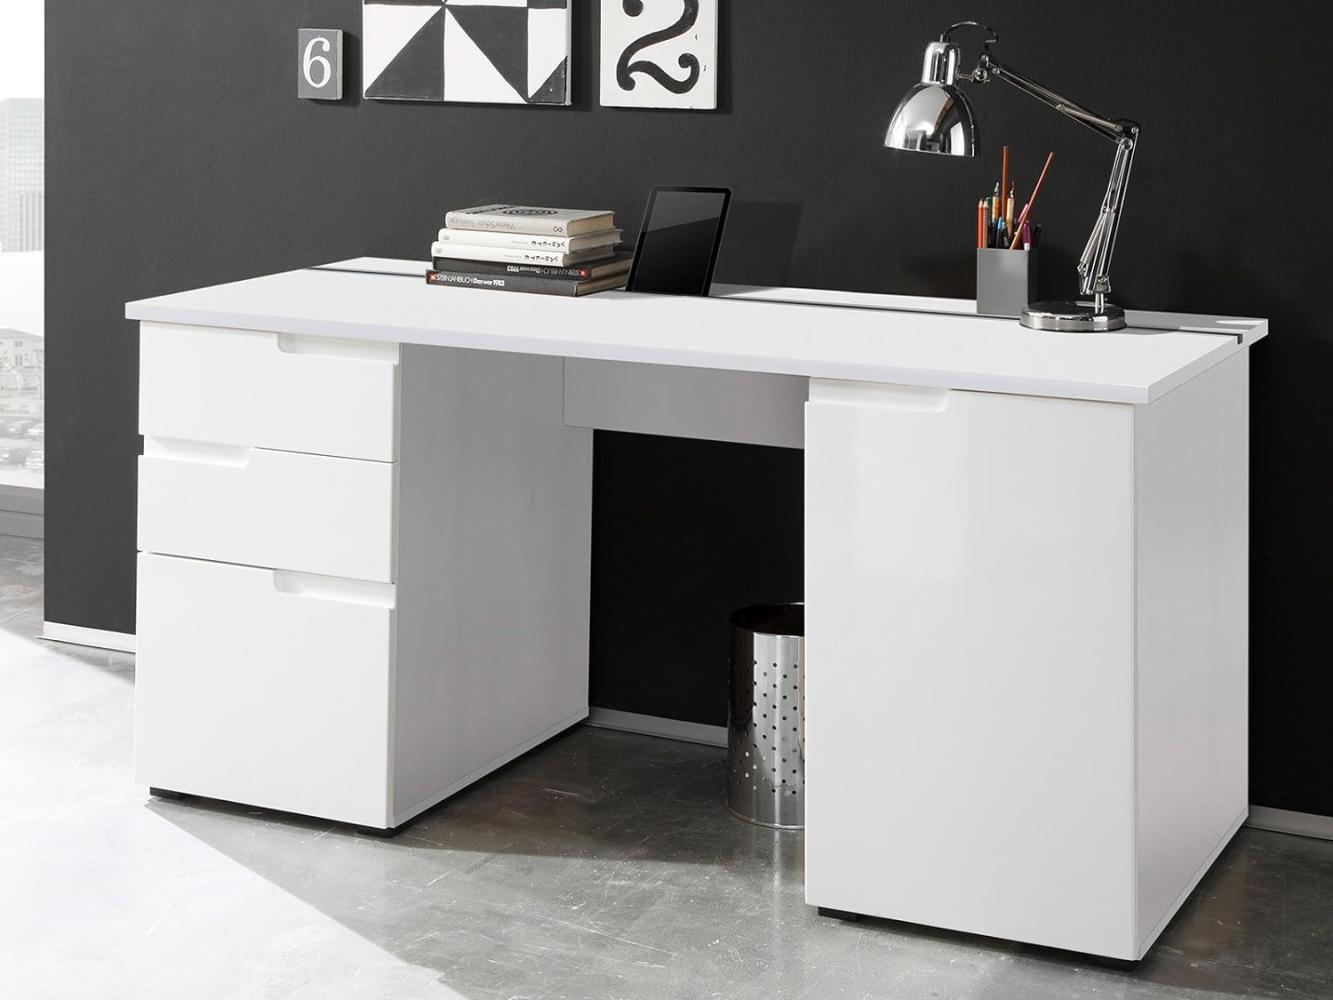 Schreibtisch >Suzette< in Weiß aus MDF - 158x76x67cm (BxHxT) Bild 1